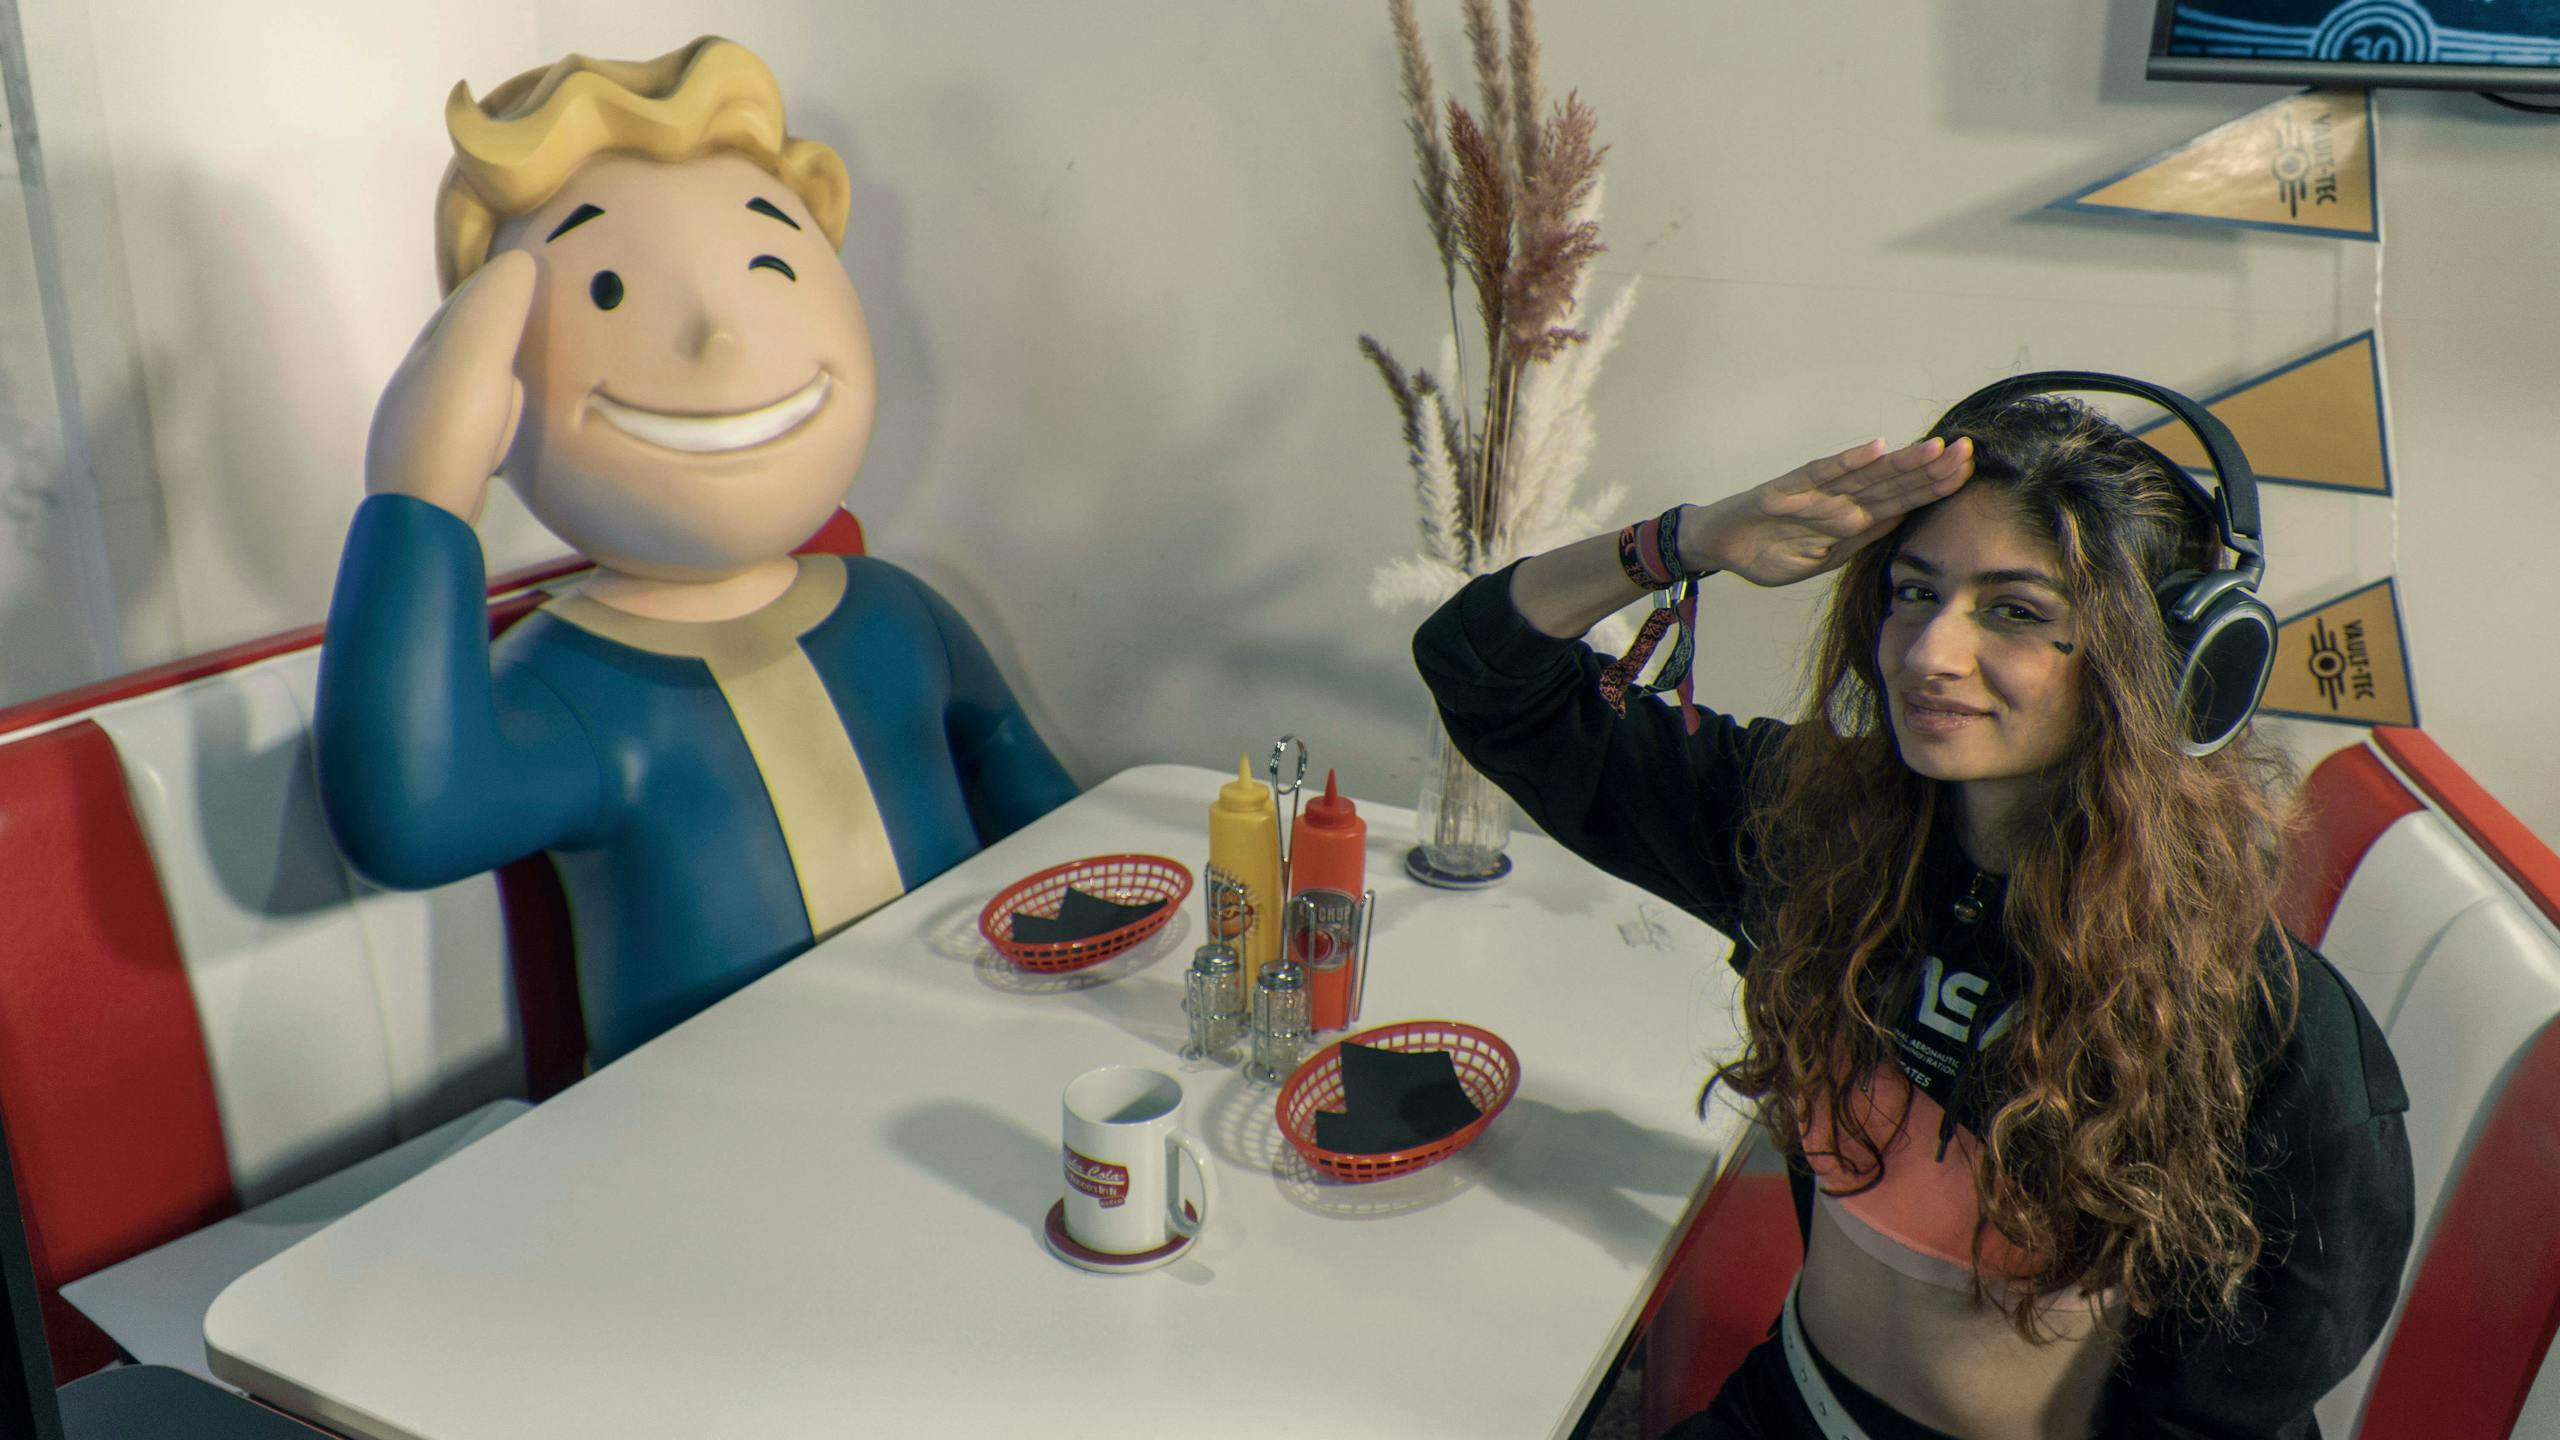 Gaming Setup fallout style: Vault Boy und Gamer girl salutieren